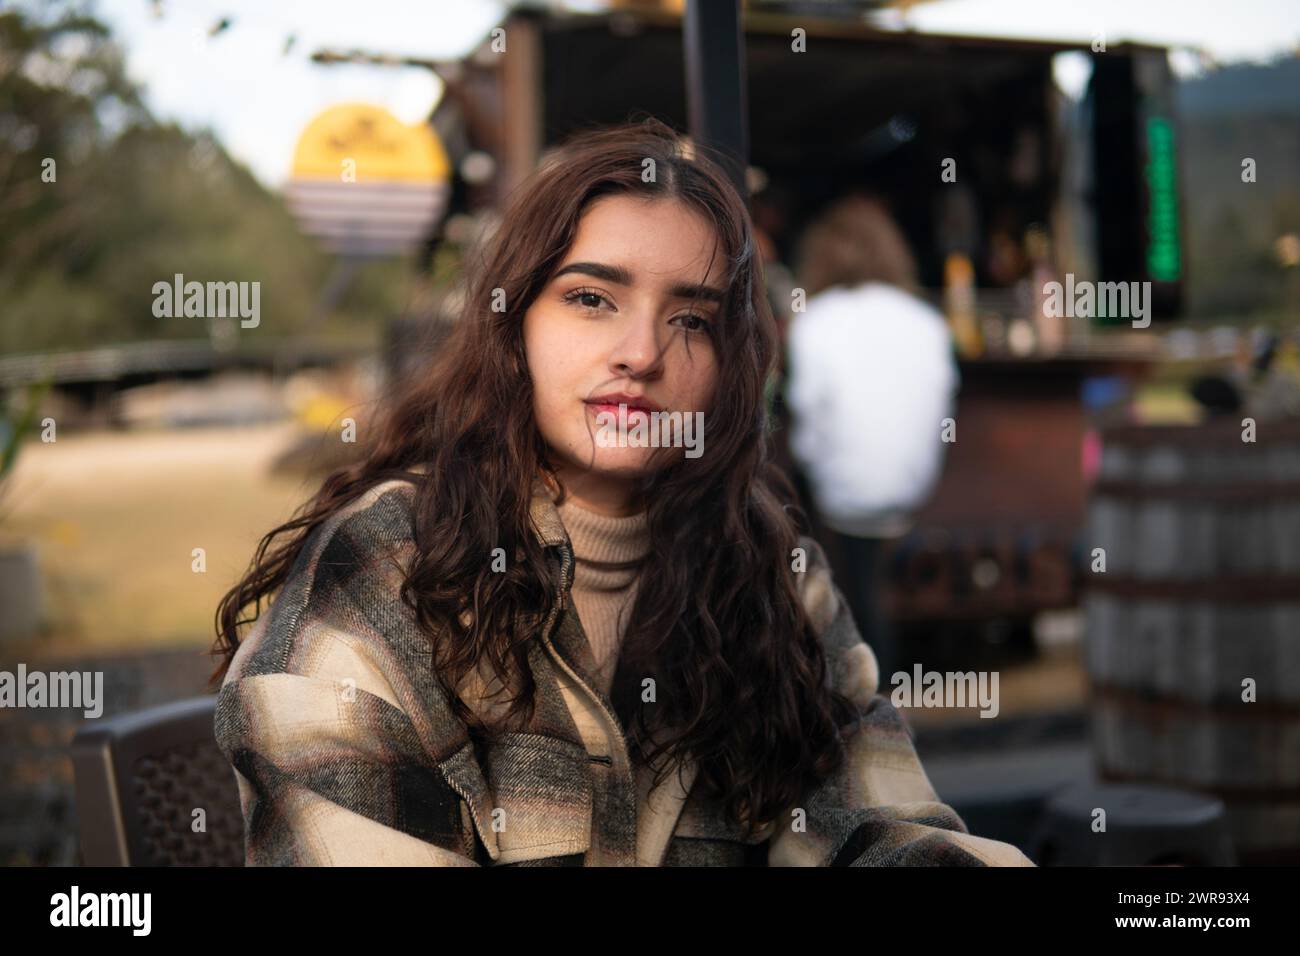 Una joven latina con una sonrisa cálida se sienta cómodamente en un ambiente de cafetería al aire libre, exudando elegancia casual Foto de stock